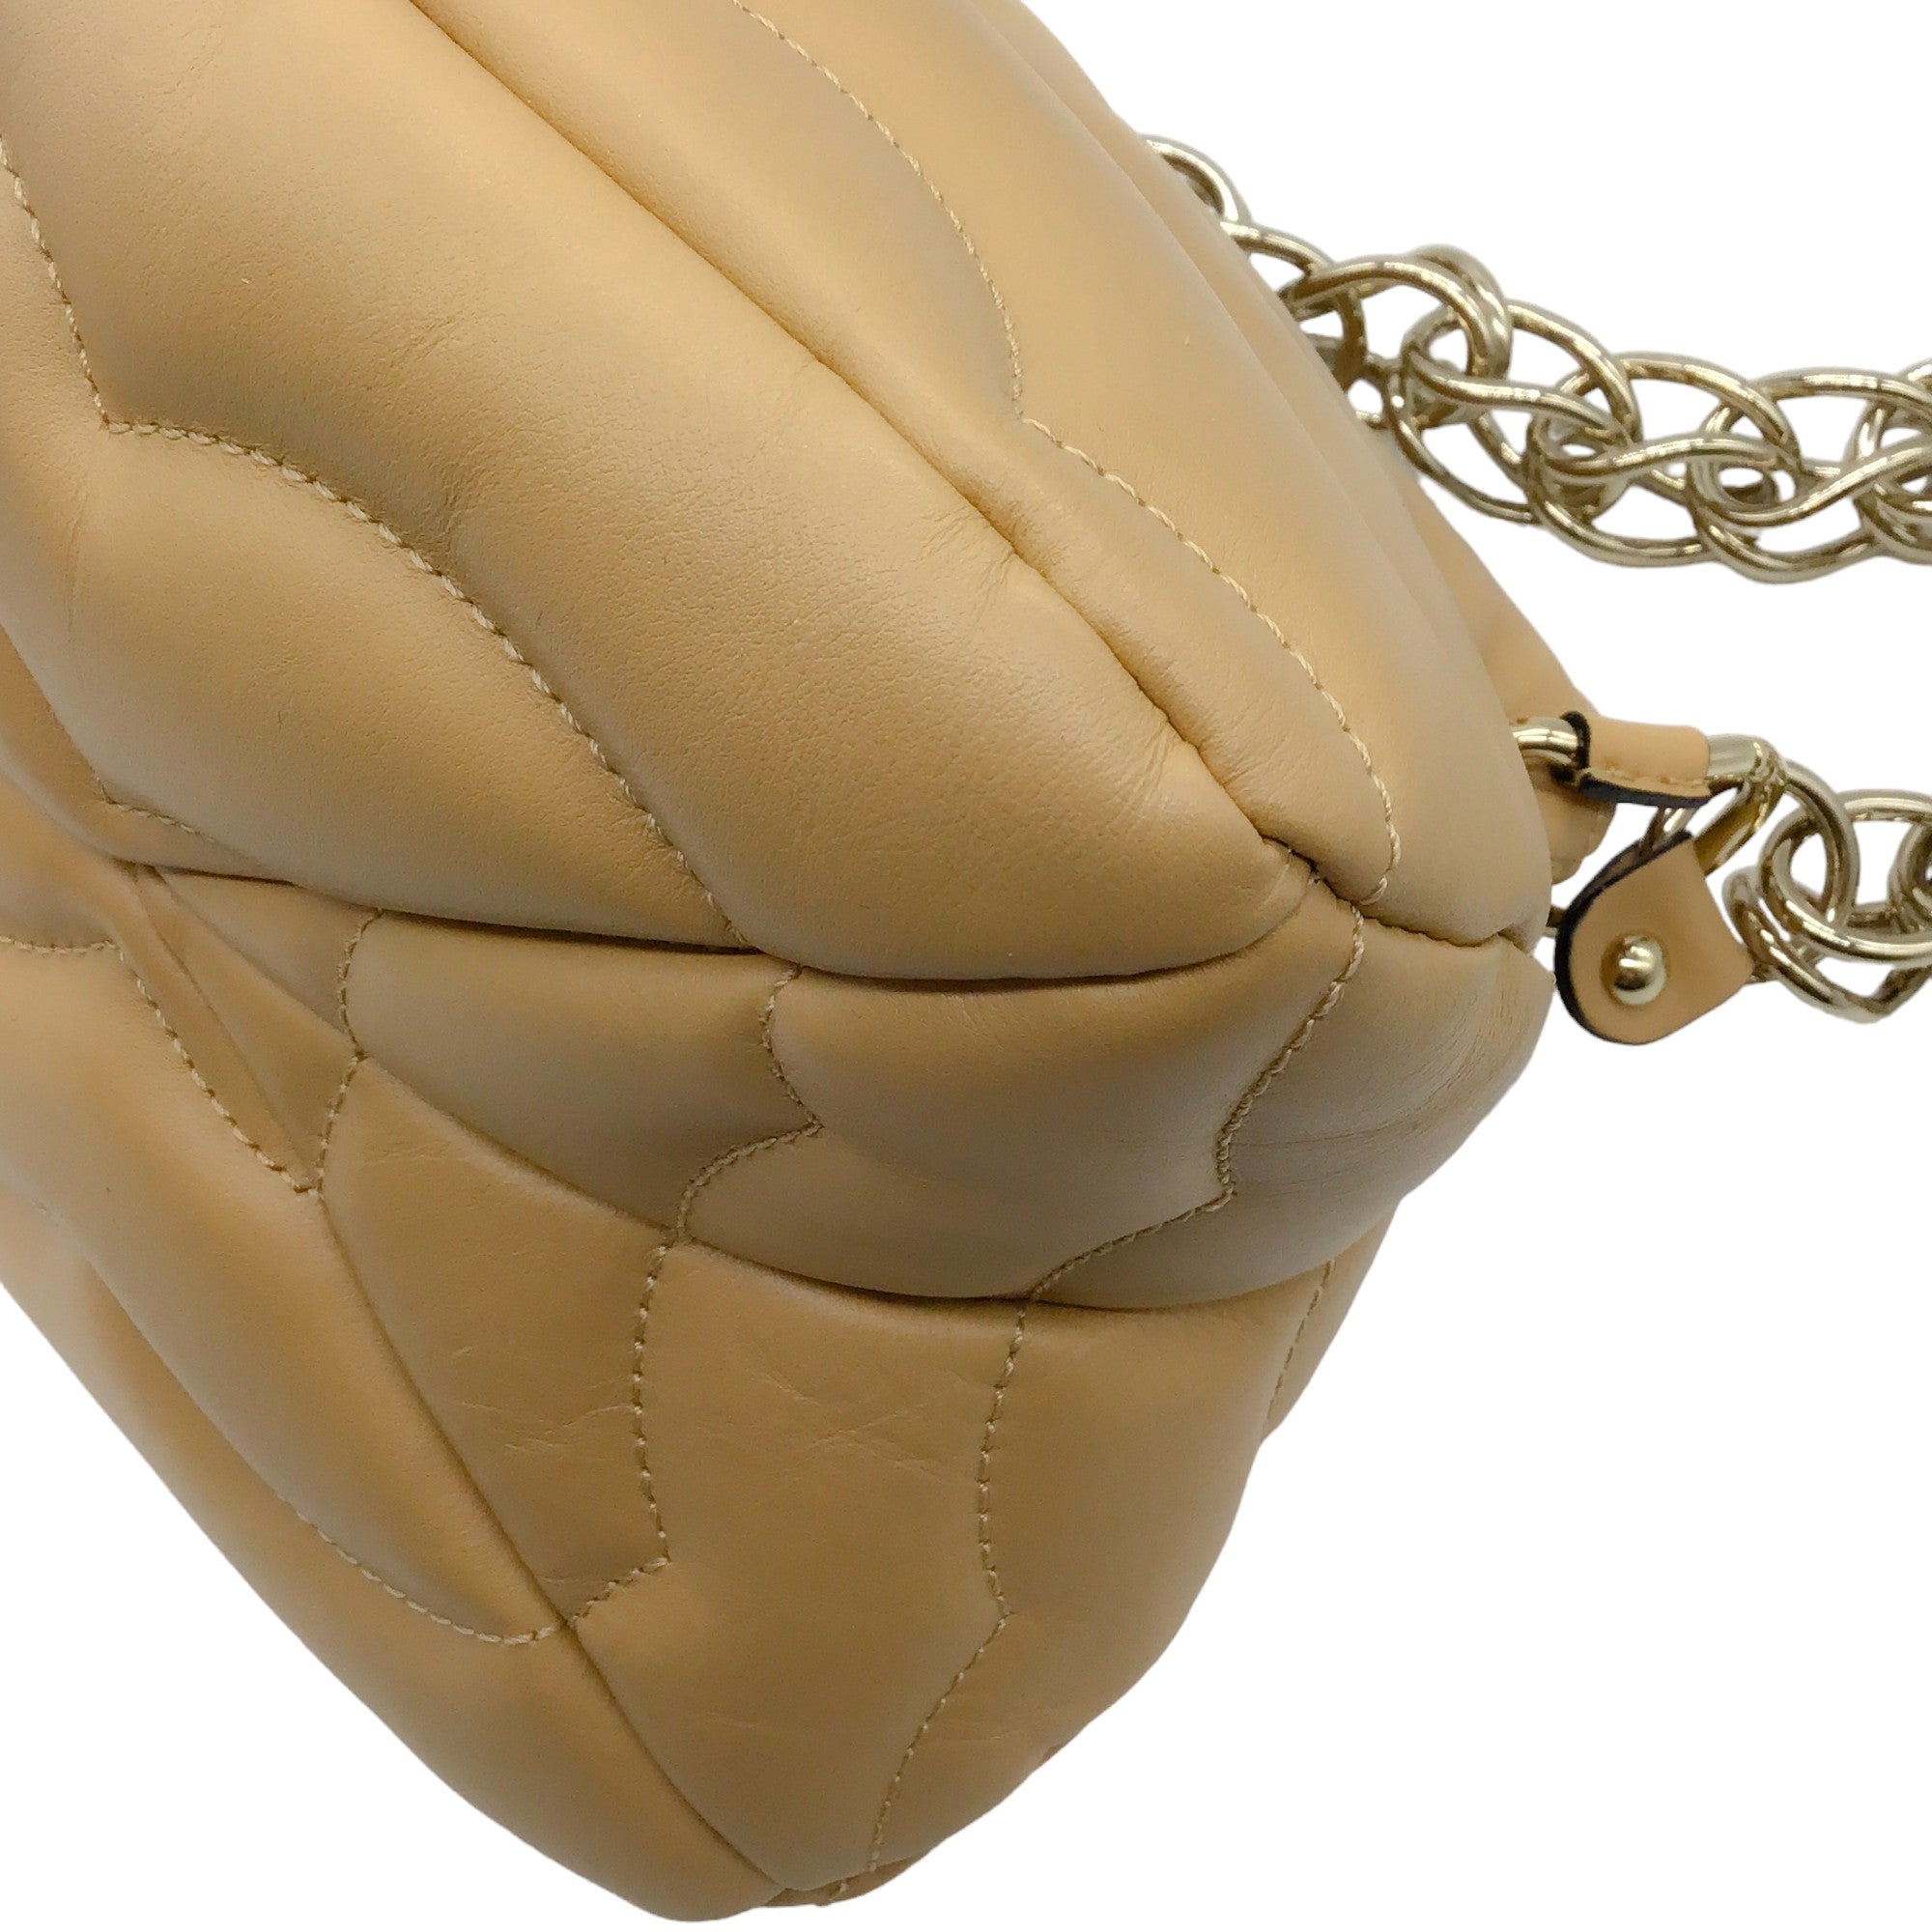 Chloe Beige Leather Small Juana Shoulder Bag